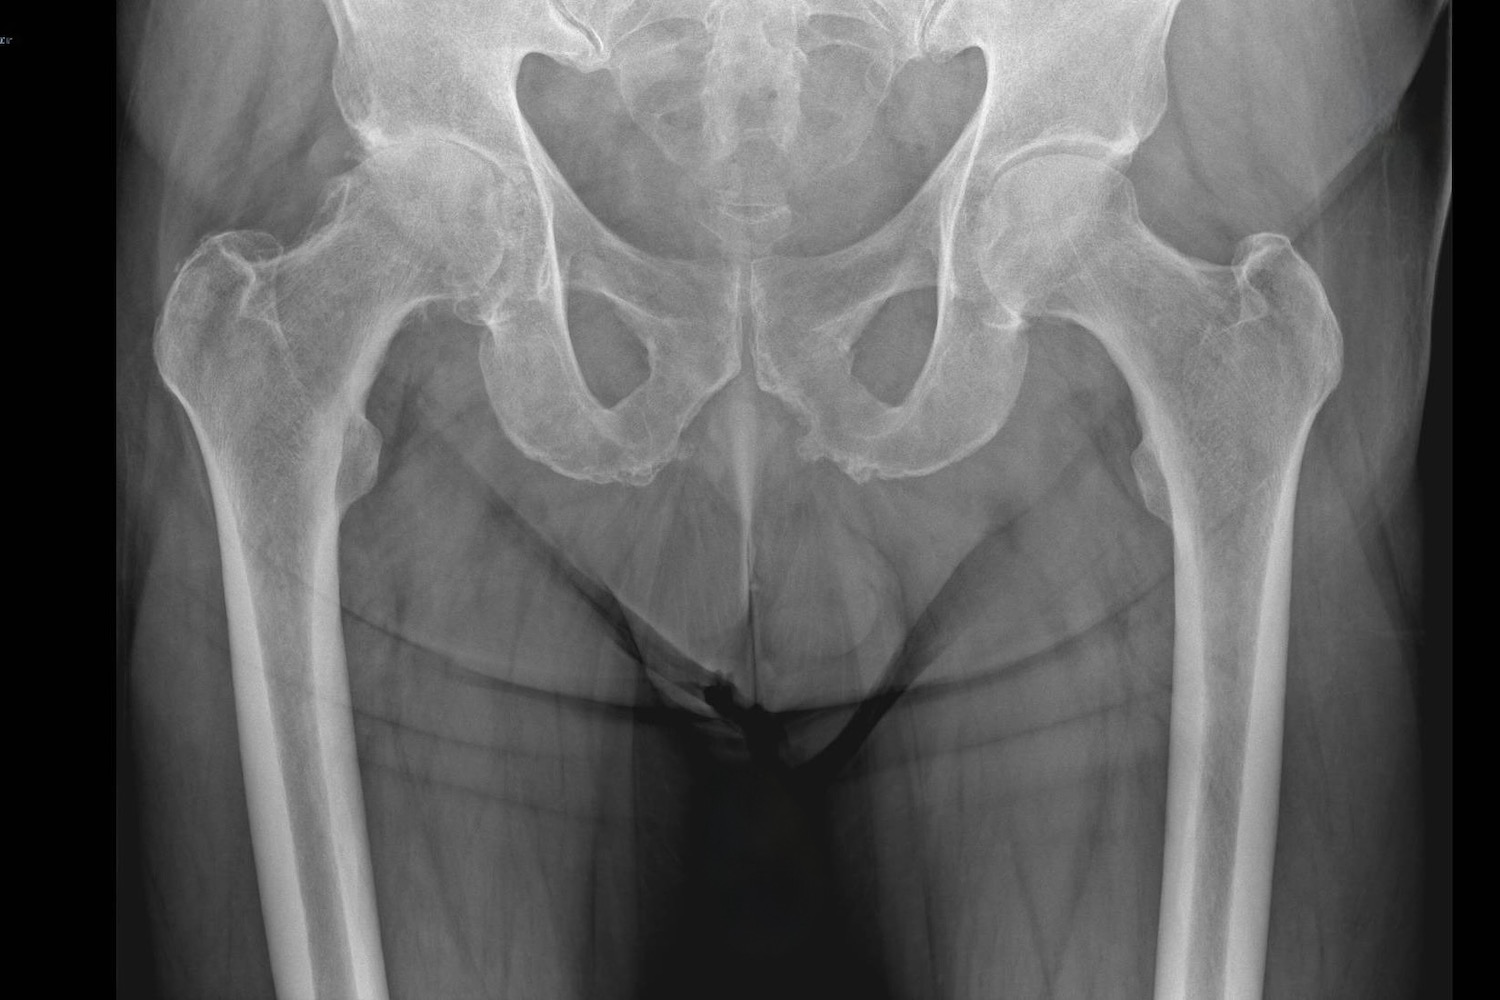 Beispiel eines Röntgenbildes mit einer Hüftarthrose rechts (Patientenseite) mit komplett aufgehobenem Gelenkspalt.